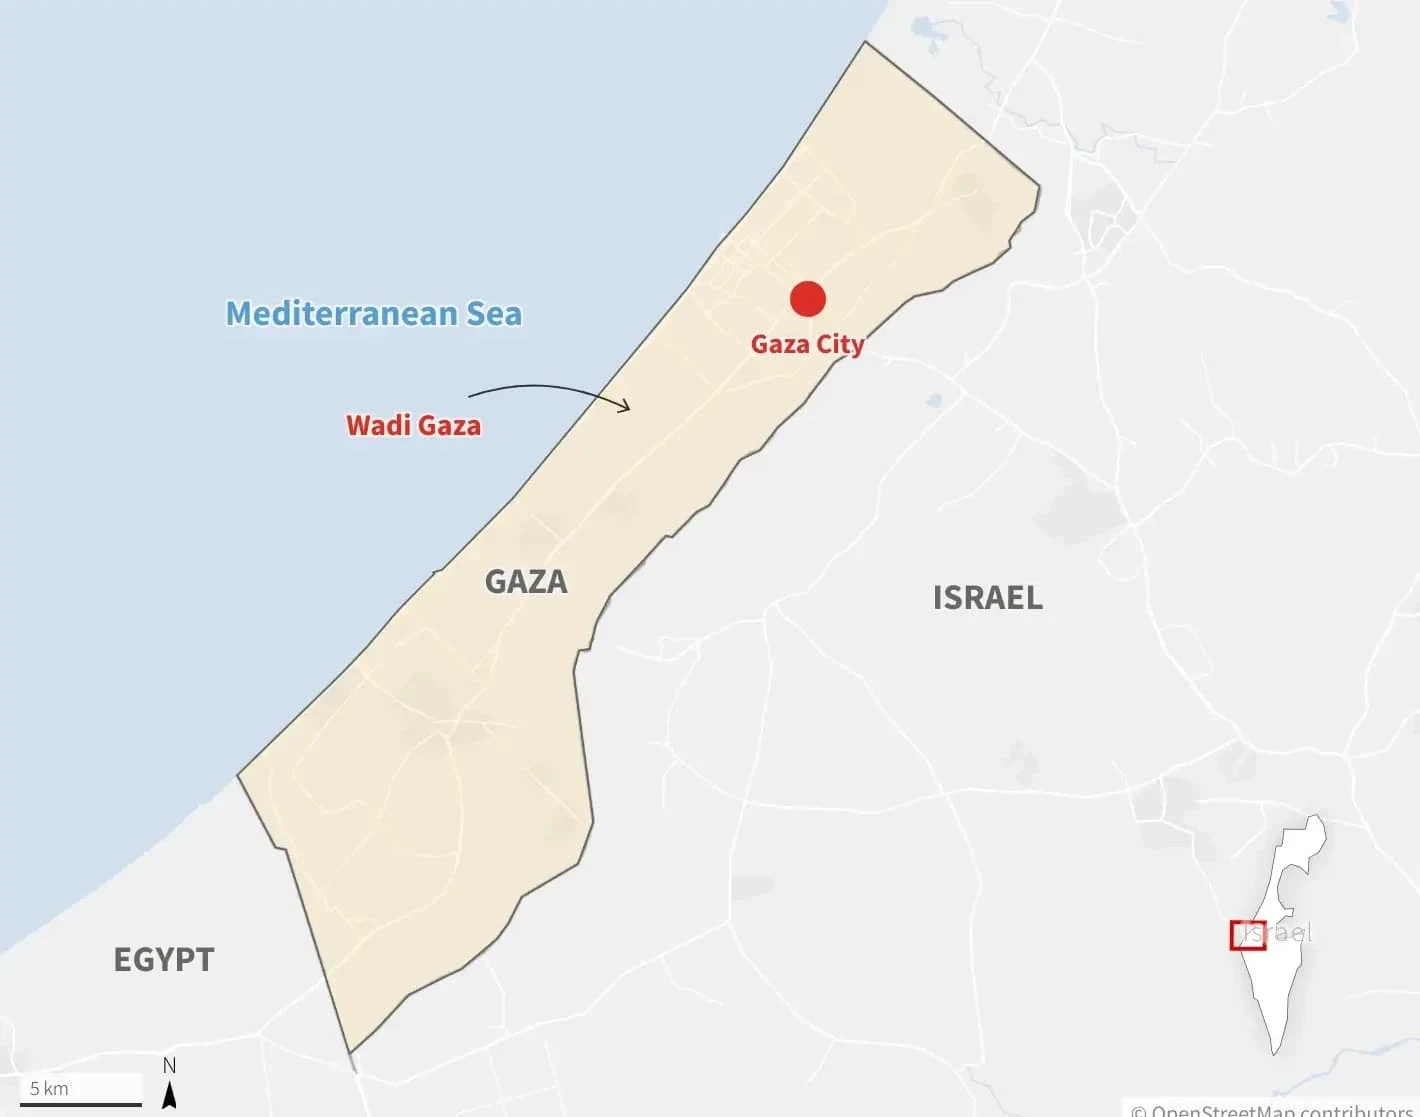 إسرائيل تحذّر الفلسطينيين من البقاء في شمال غزة أو المخاطرة بأن ينظر إليهم على أنهم شركاء"إرهابيون"